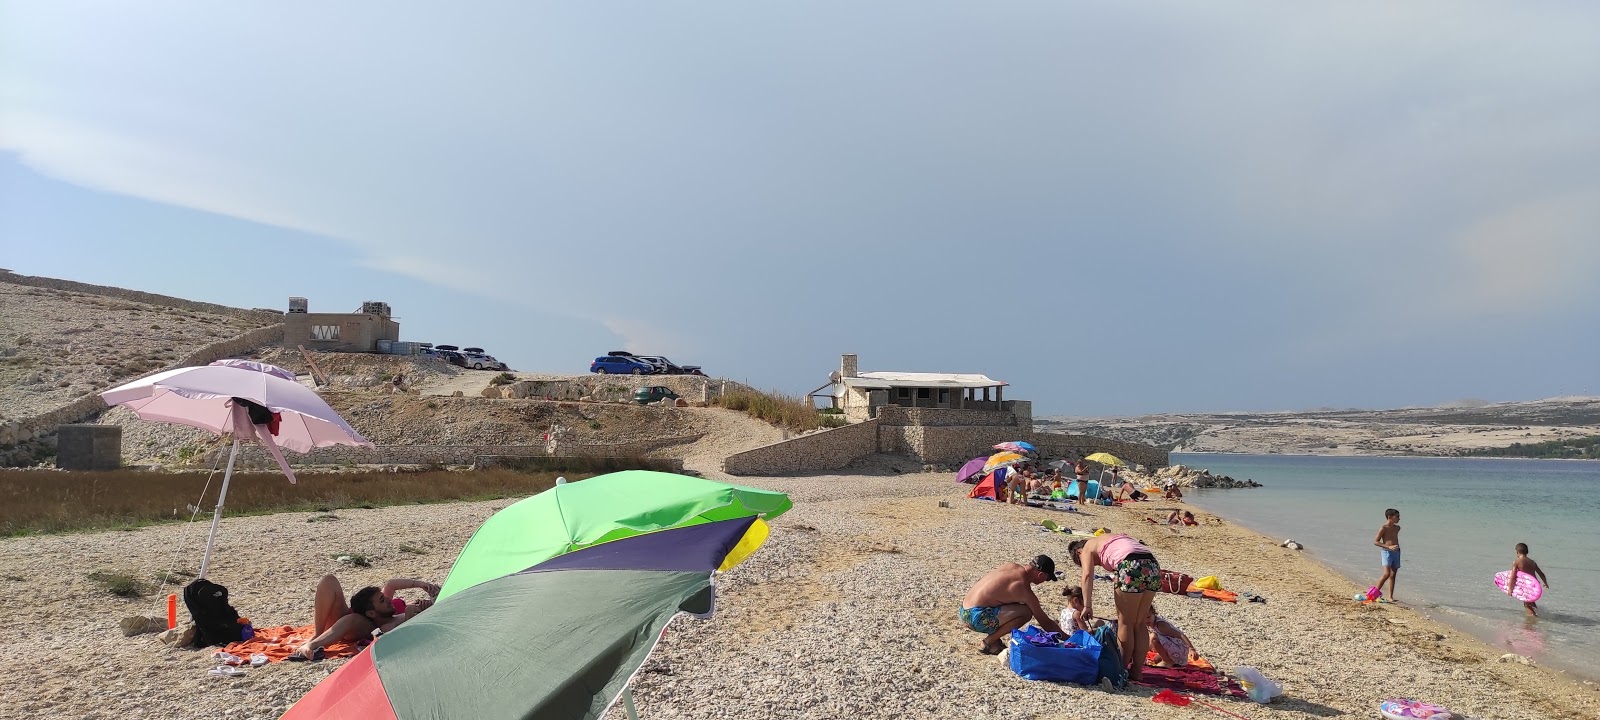 Photo de Prnjica beach - endroit populaire parmi les connaisseurs de la détente